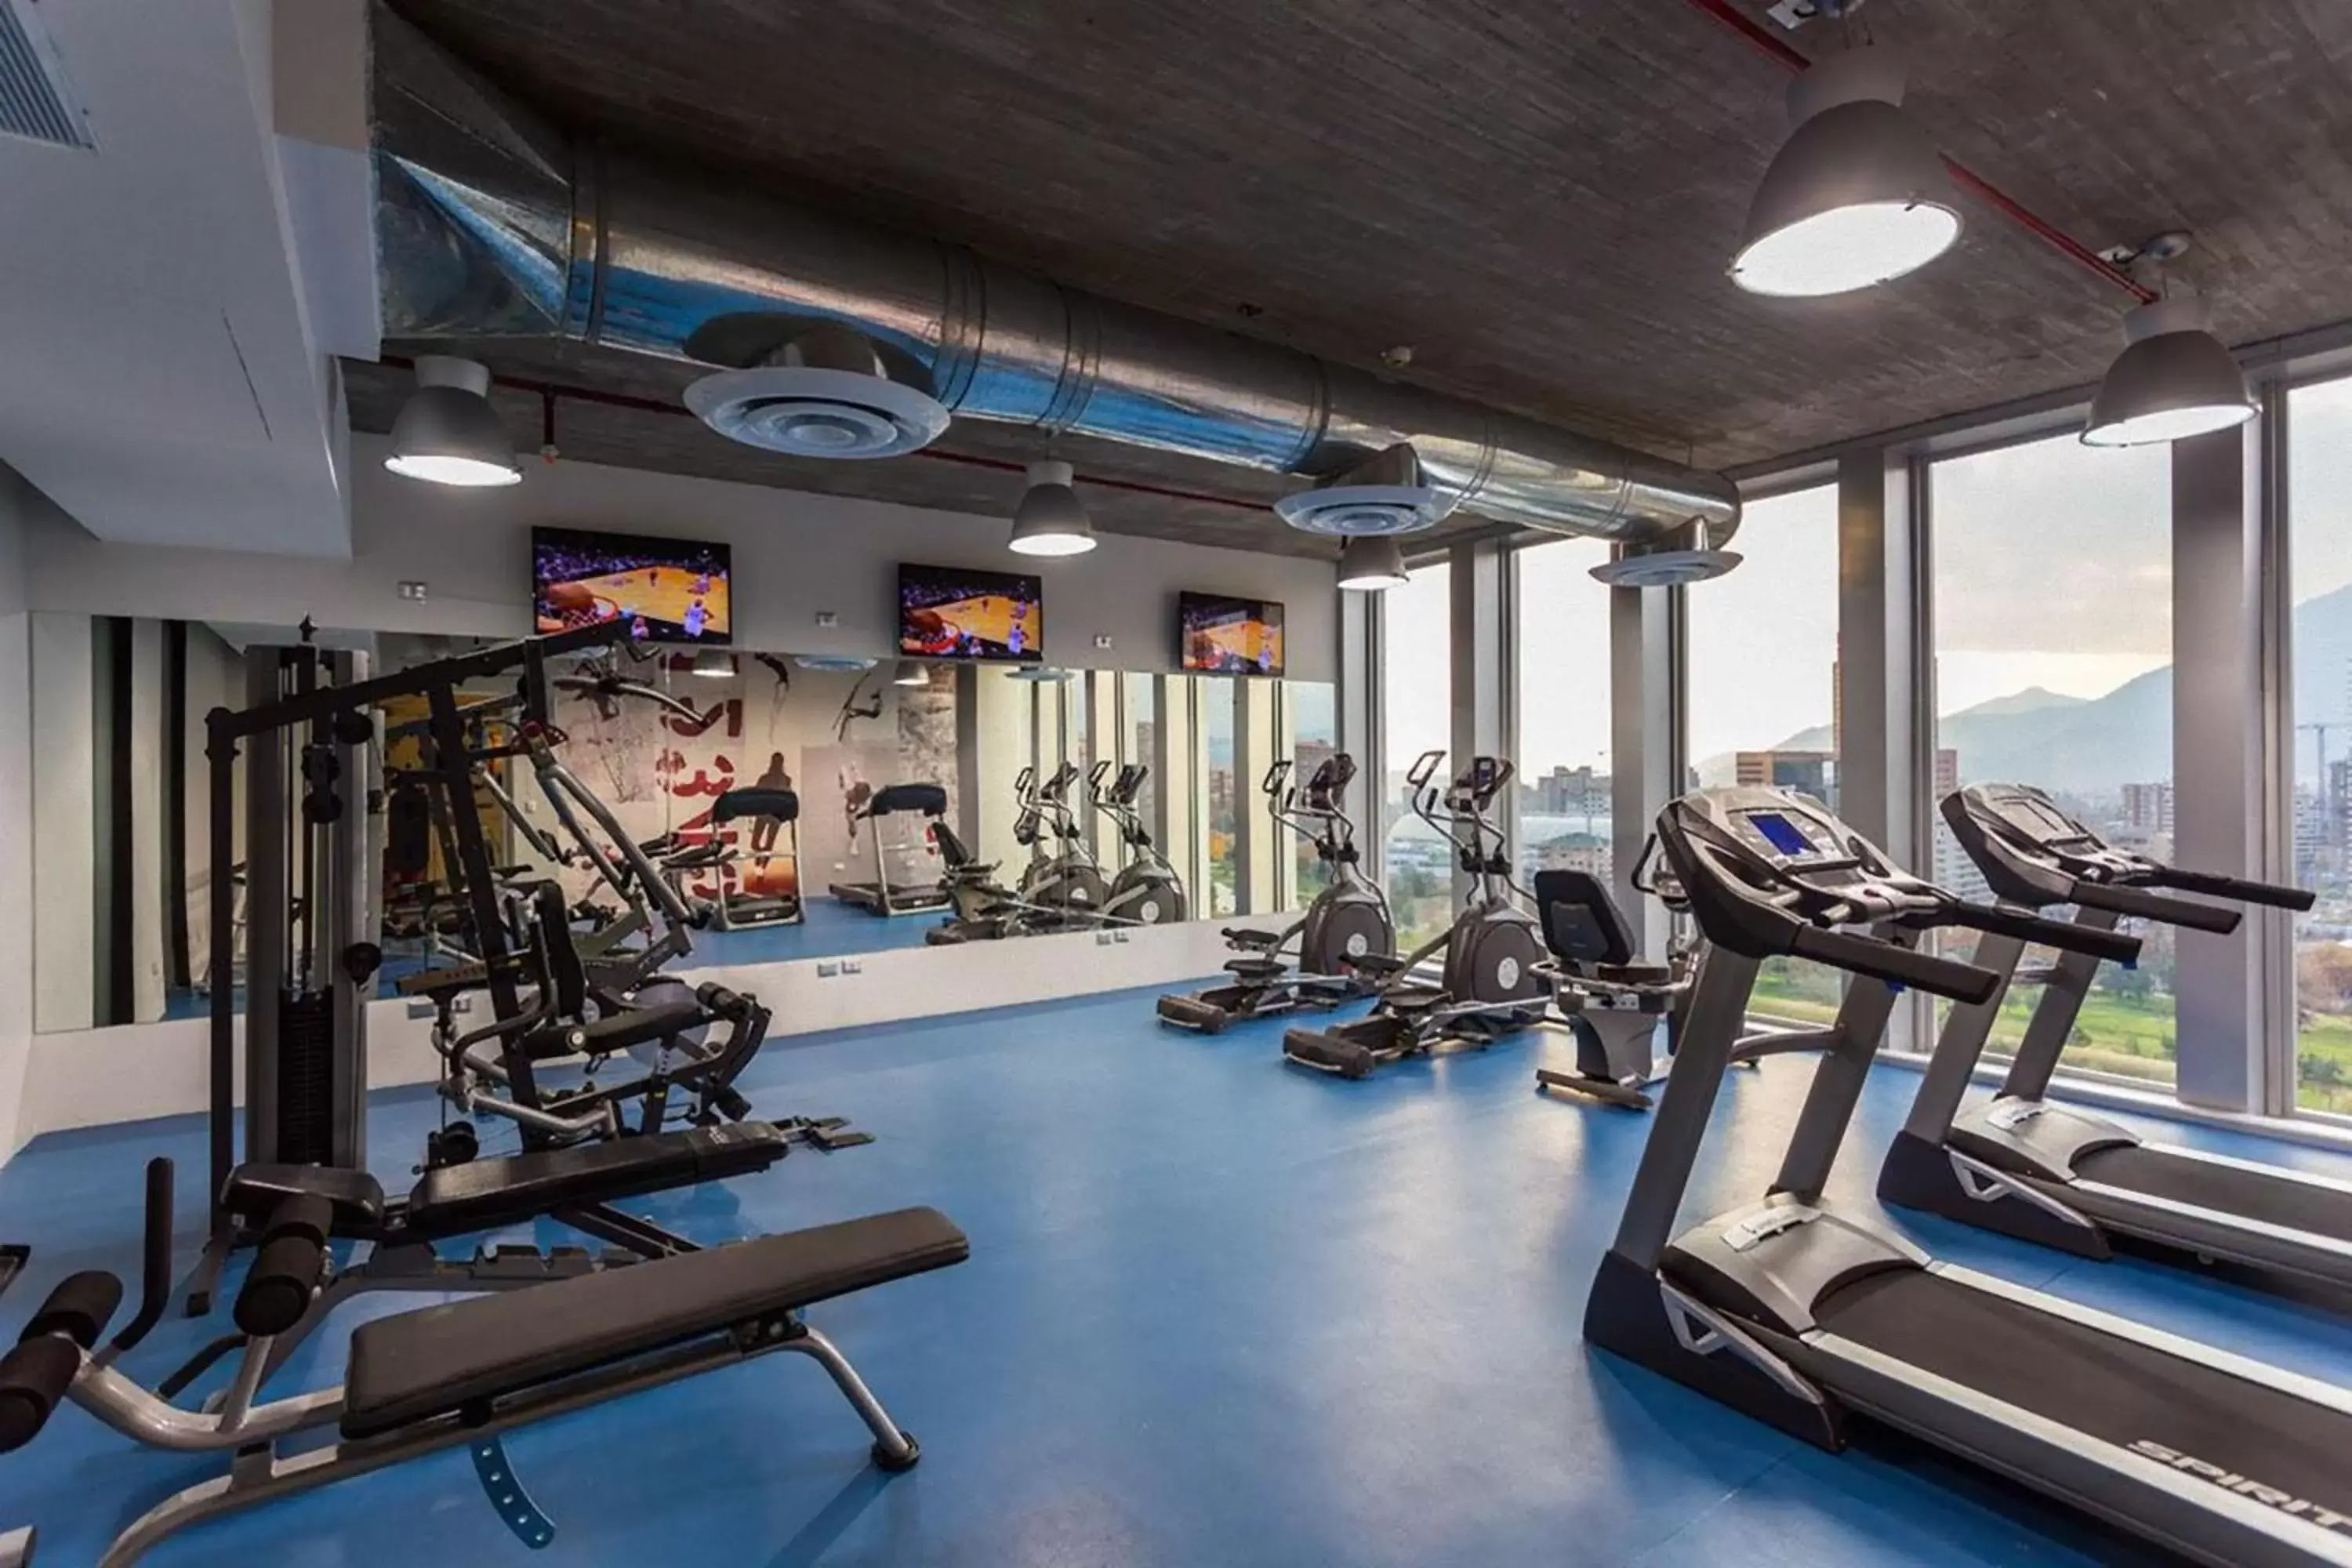 Fitness centre/facilities, Fitness Center/Facilities in Radisson Blu Plaza El Bosque Santiago